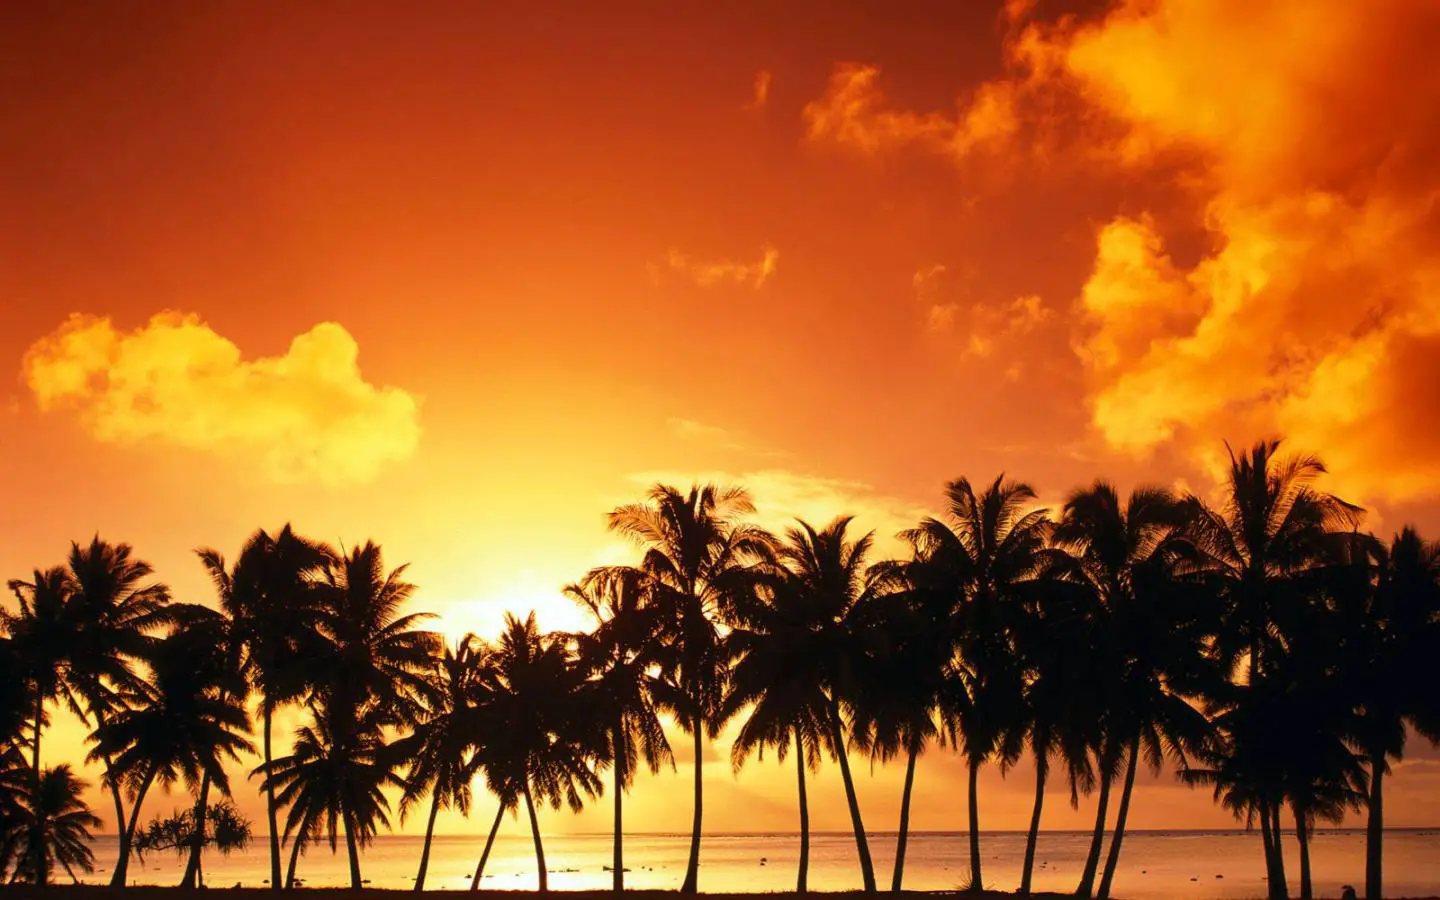 Papel de parede de praia gratuito com pôr do sol laranja com palmeiras na praia